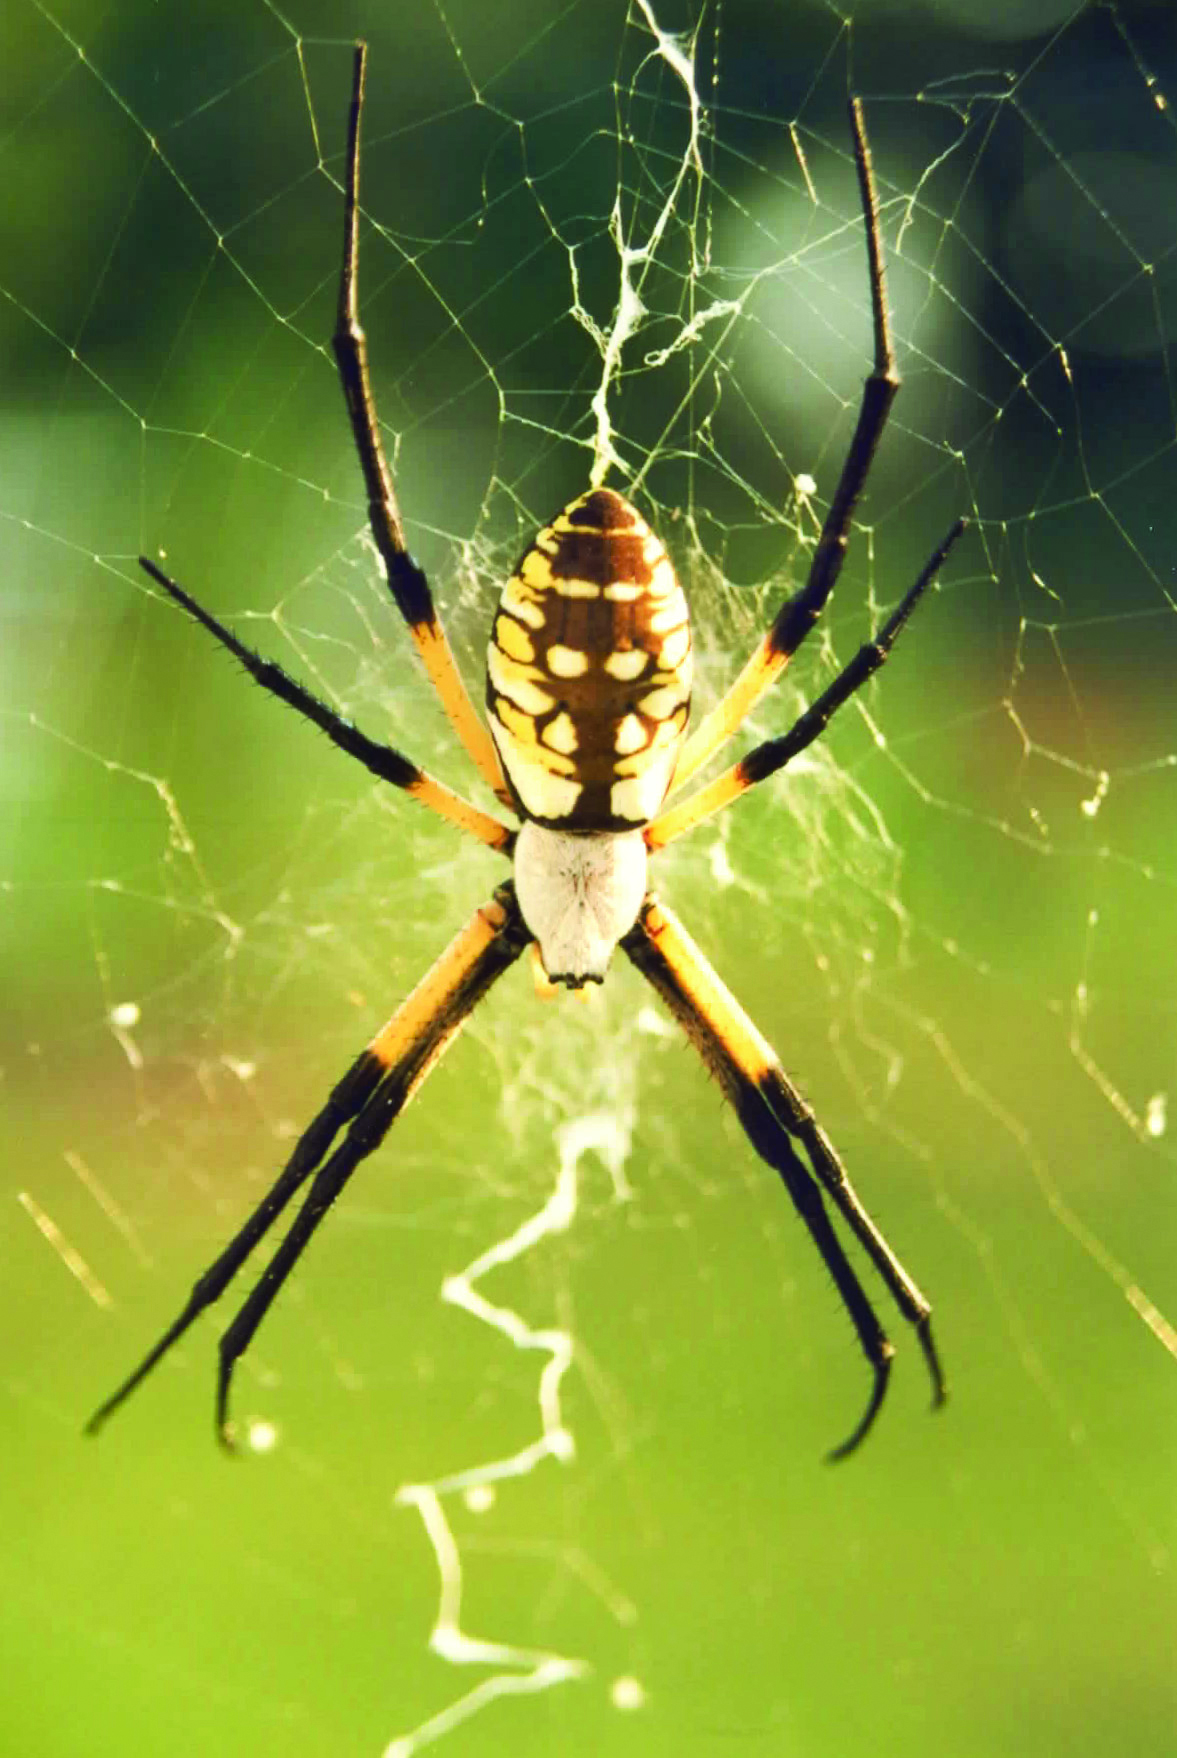 Garden Spider On A Web 1177x1758 